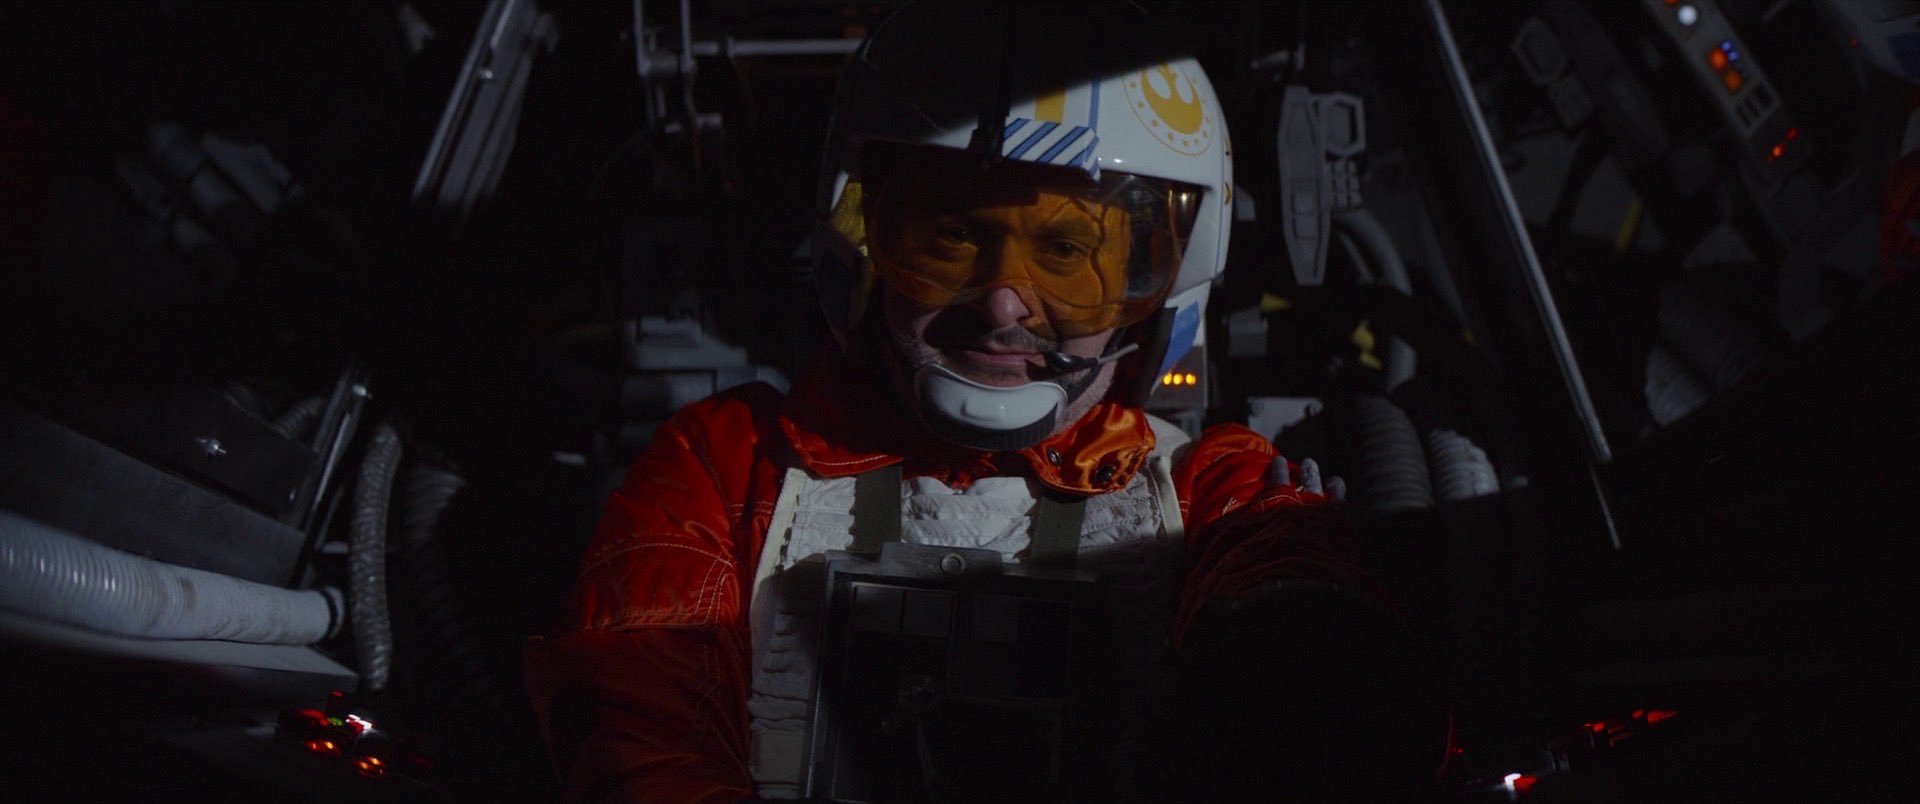 Cena da série The Mandalorian. Na imagem, há um piloto, interpretado por Dave Filoni, homem branco, vestindo um uniforme laranja e um capacete com o símbolo da Nova República. Ele está dentro de uma cabine da nave X-Wing.